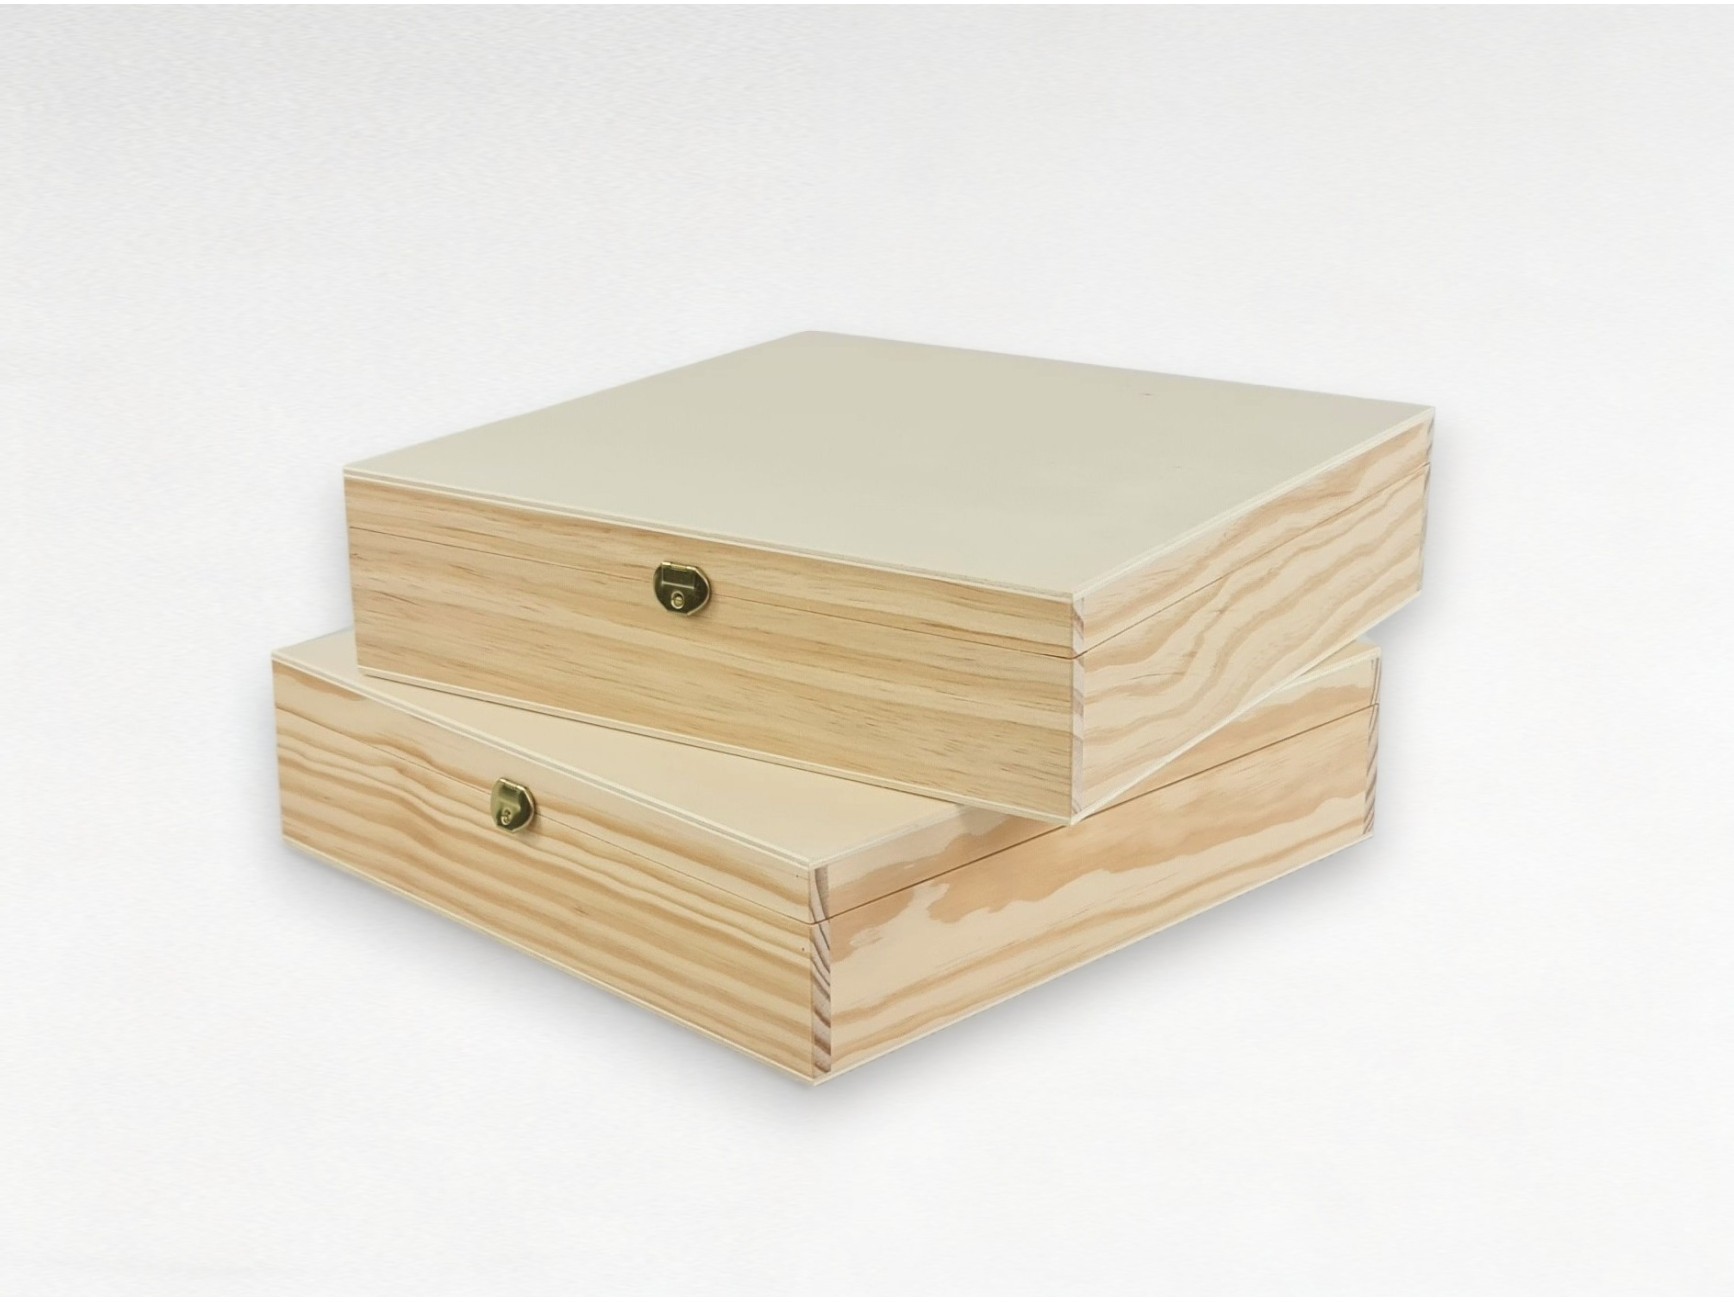 La Casa del Artesano-Caja de madera de pino y tapa de MDF rectangular con  bisagras con broche (30*40)12cms.